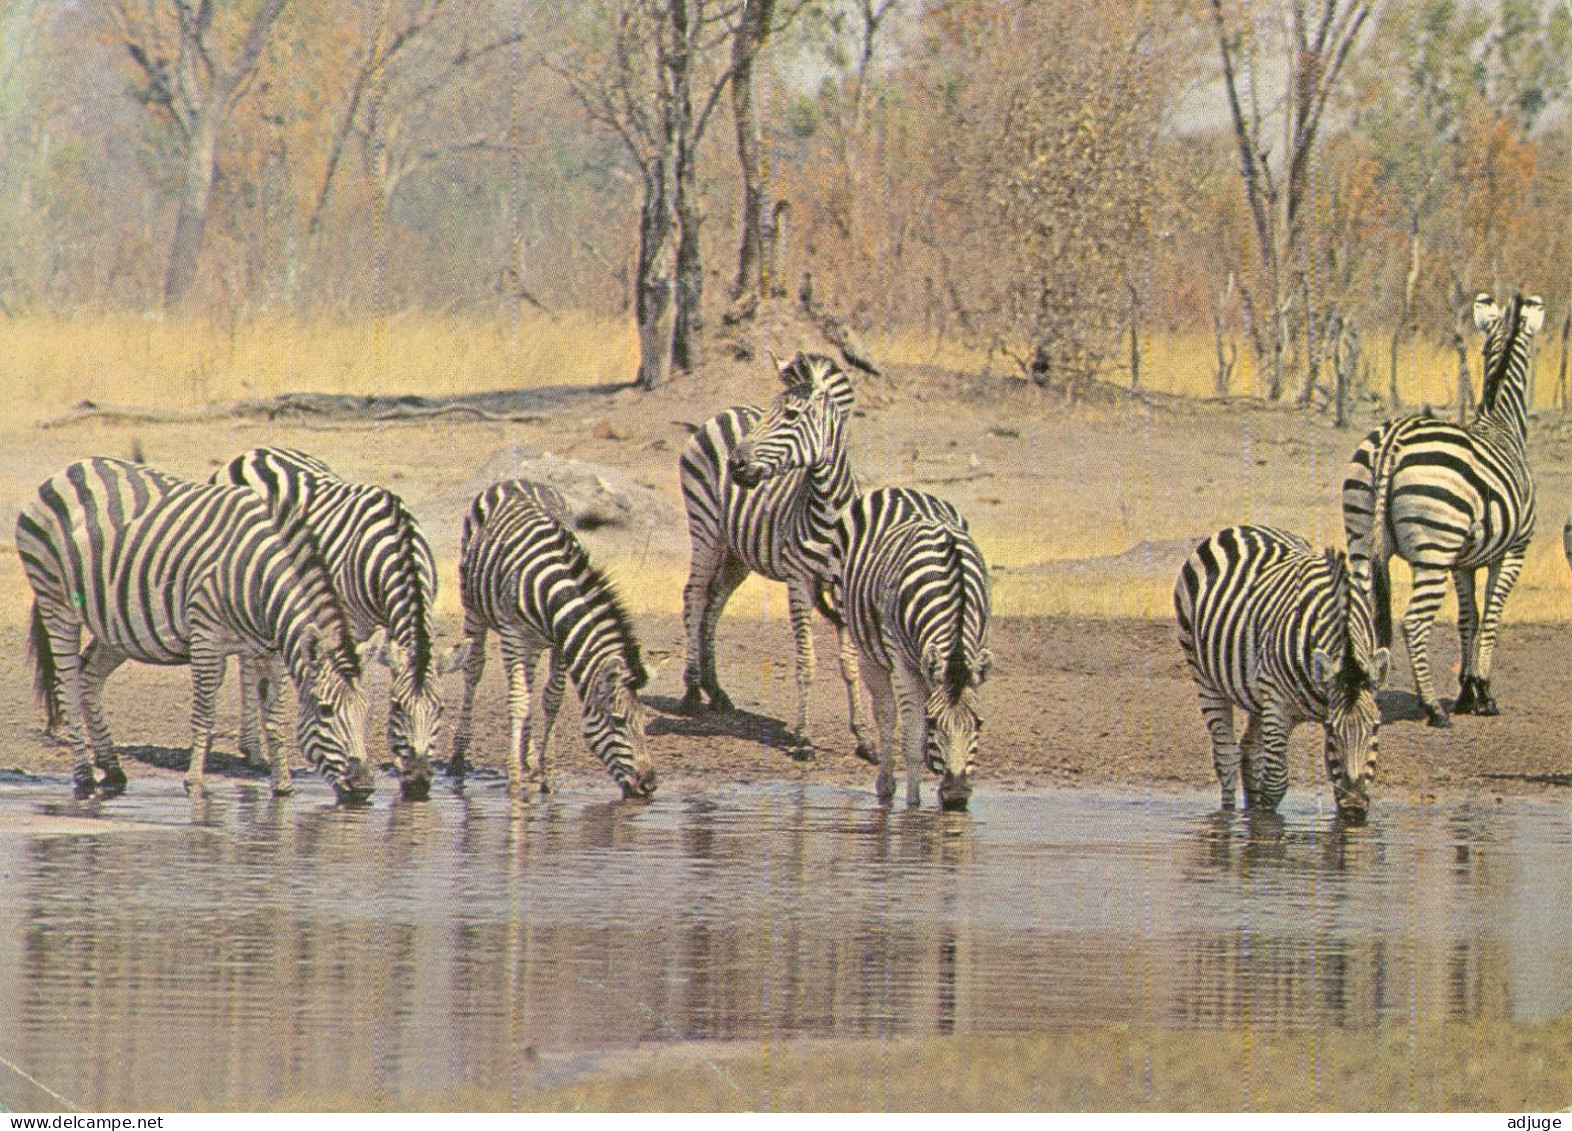 CPM- RHODÉSIE - 1975 - Burchells Zebras, Wankie National Park, Rhodesia ( ZIMBABWE)* TBE - Zimbabwe